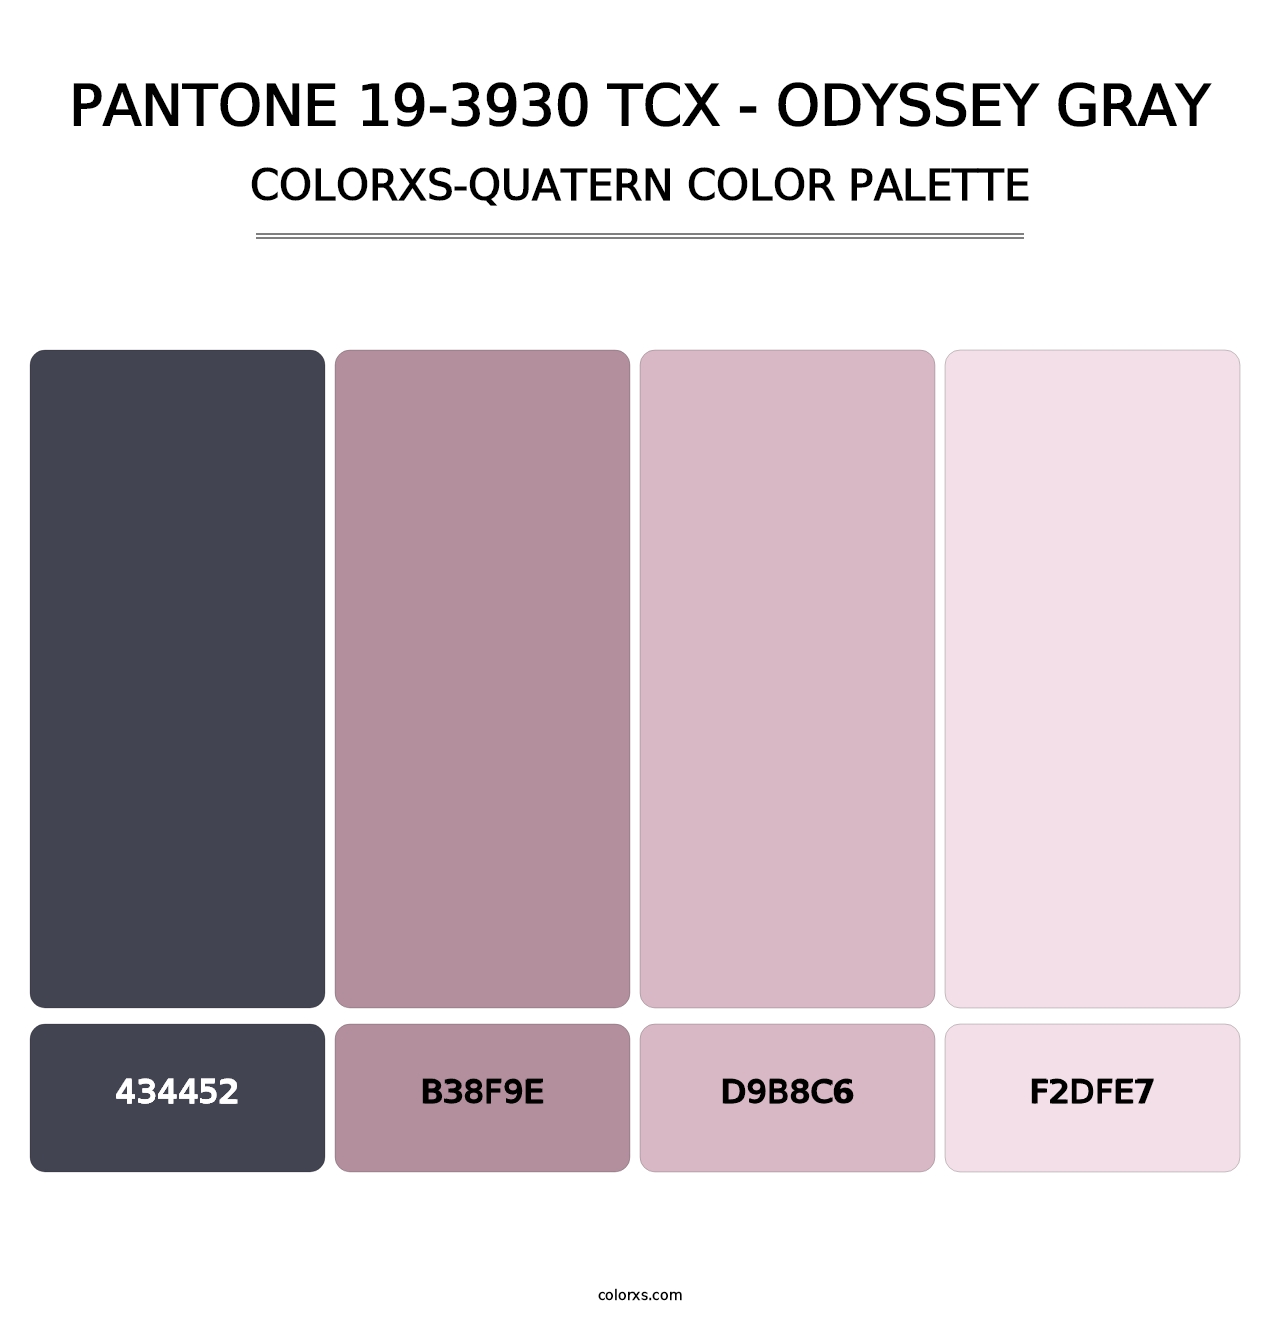 PANTONE 19-3930 TCX - Odyssey Gray - Colorxs Quatern Palette